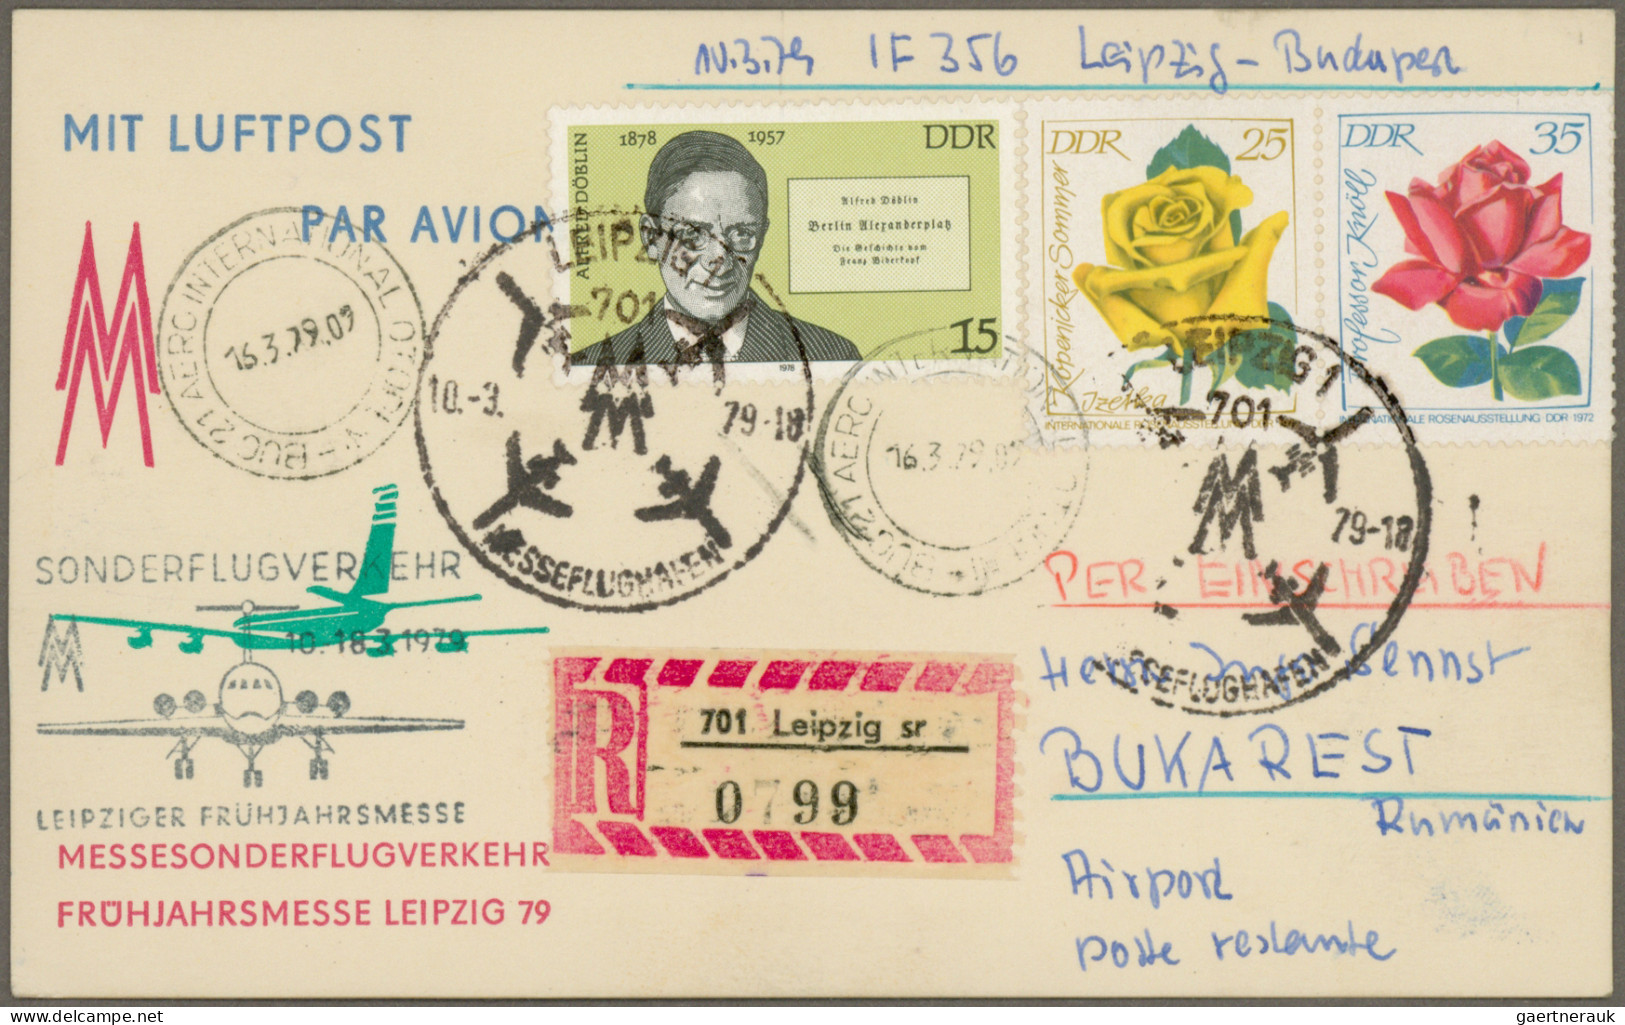 DDR: 1955/1980, Partie von 33 besseren Briefen und Karten, dabei 3 DM und 5 DM F